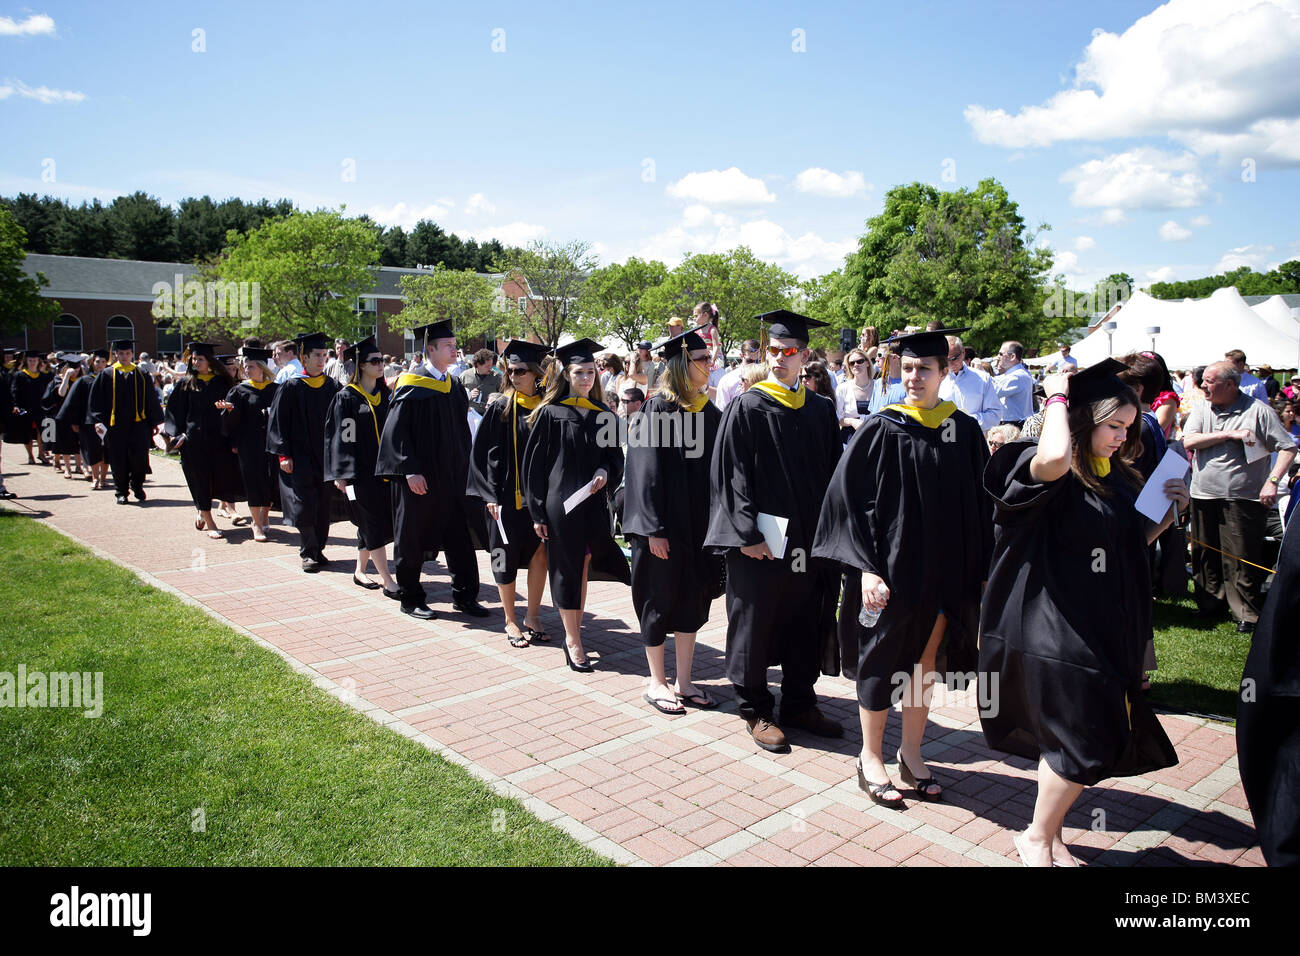 Les élèves entrent dans l'ouverture à la cérémonie de l'université de Quinnipiac Hamden CT USA Banque D'Images